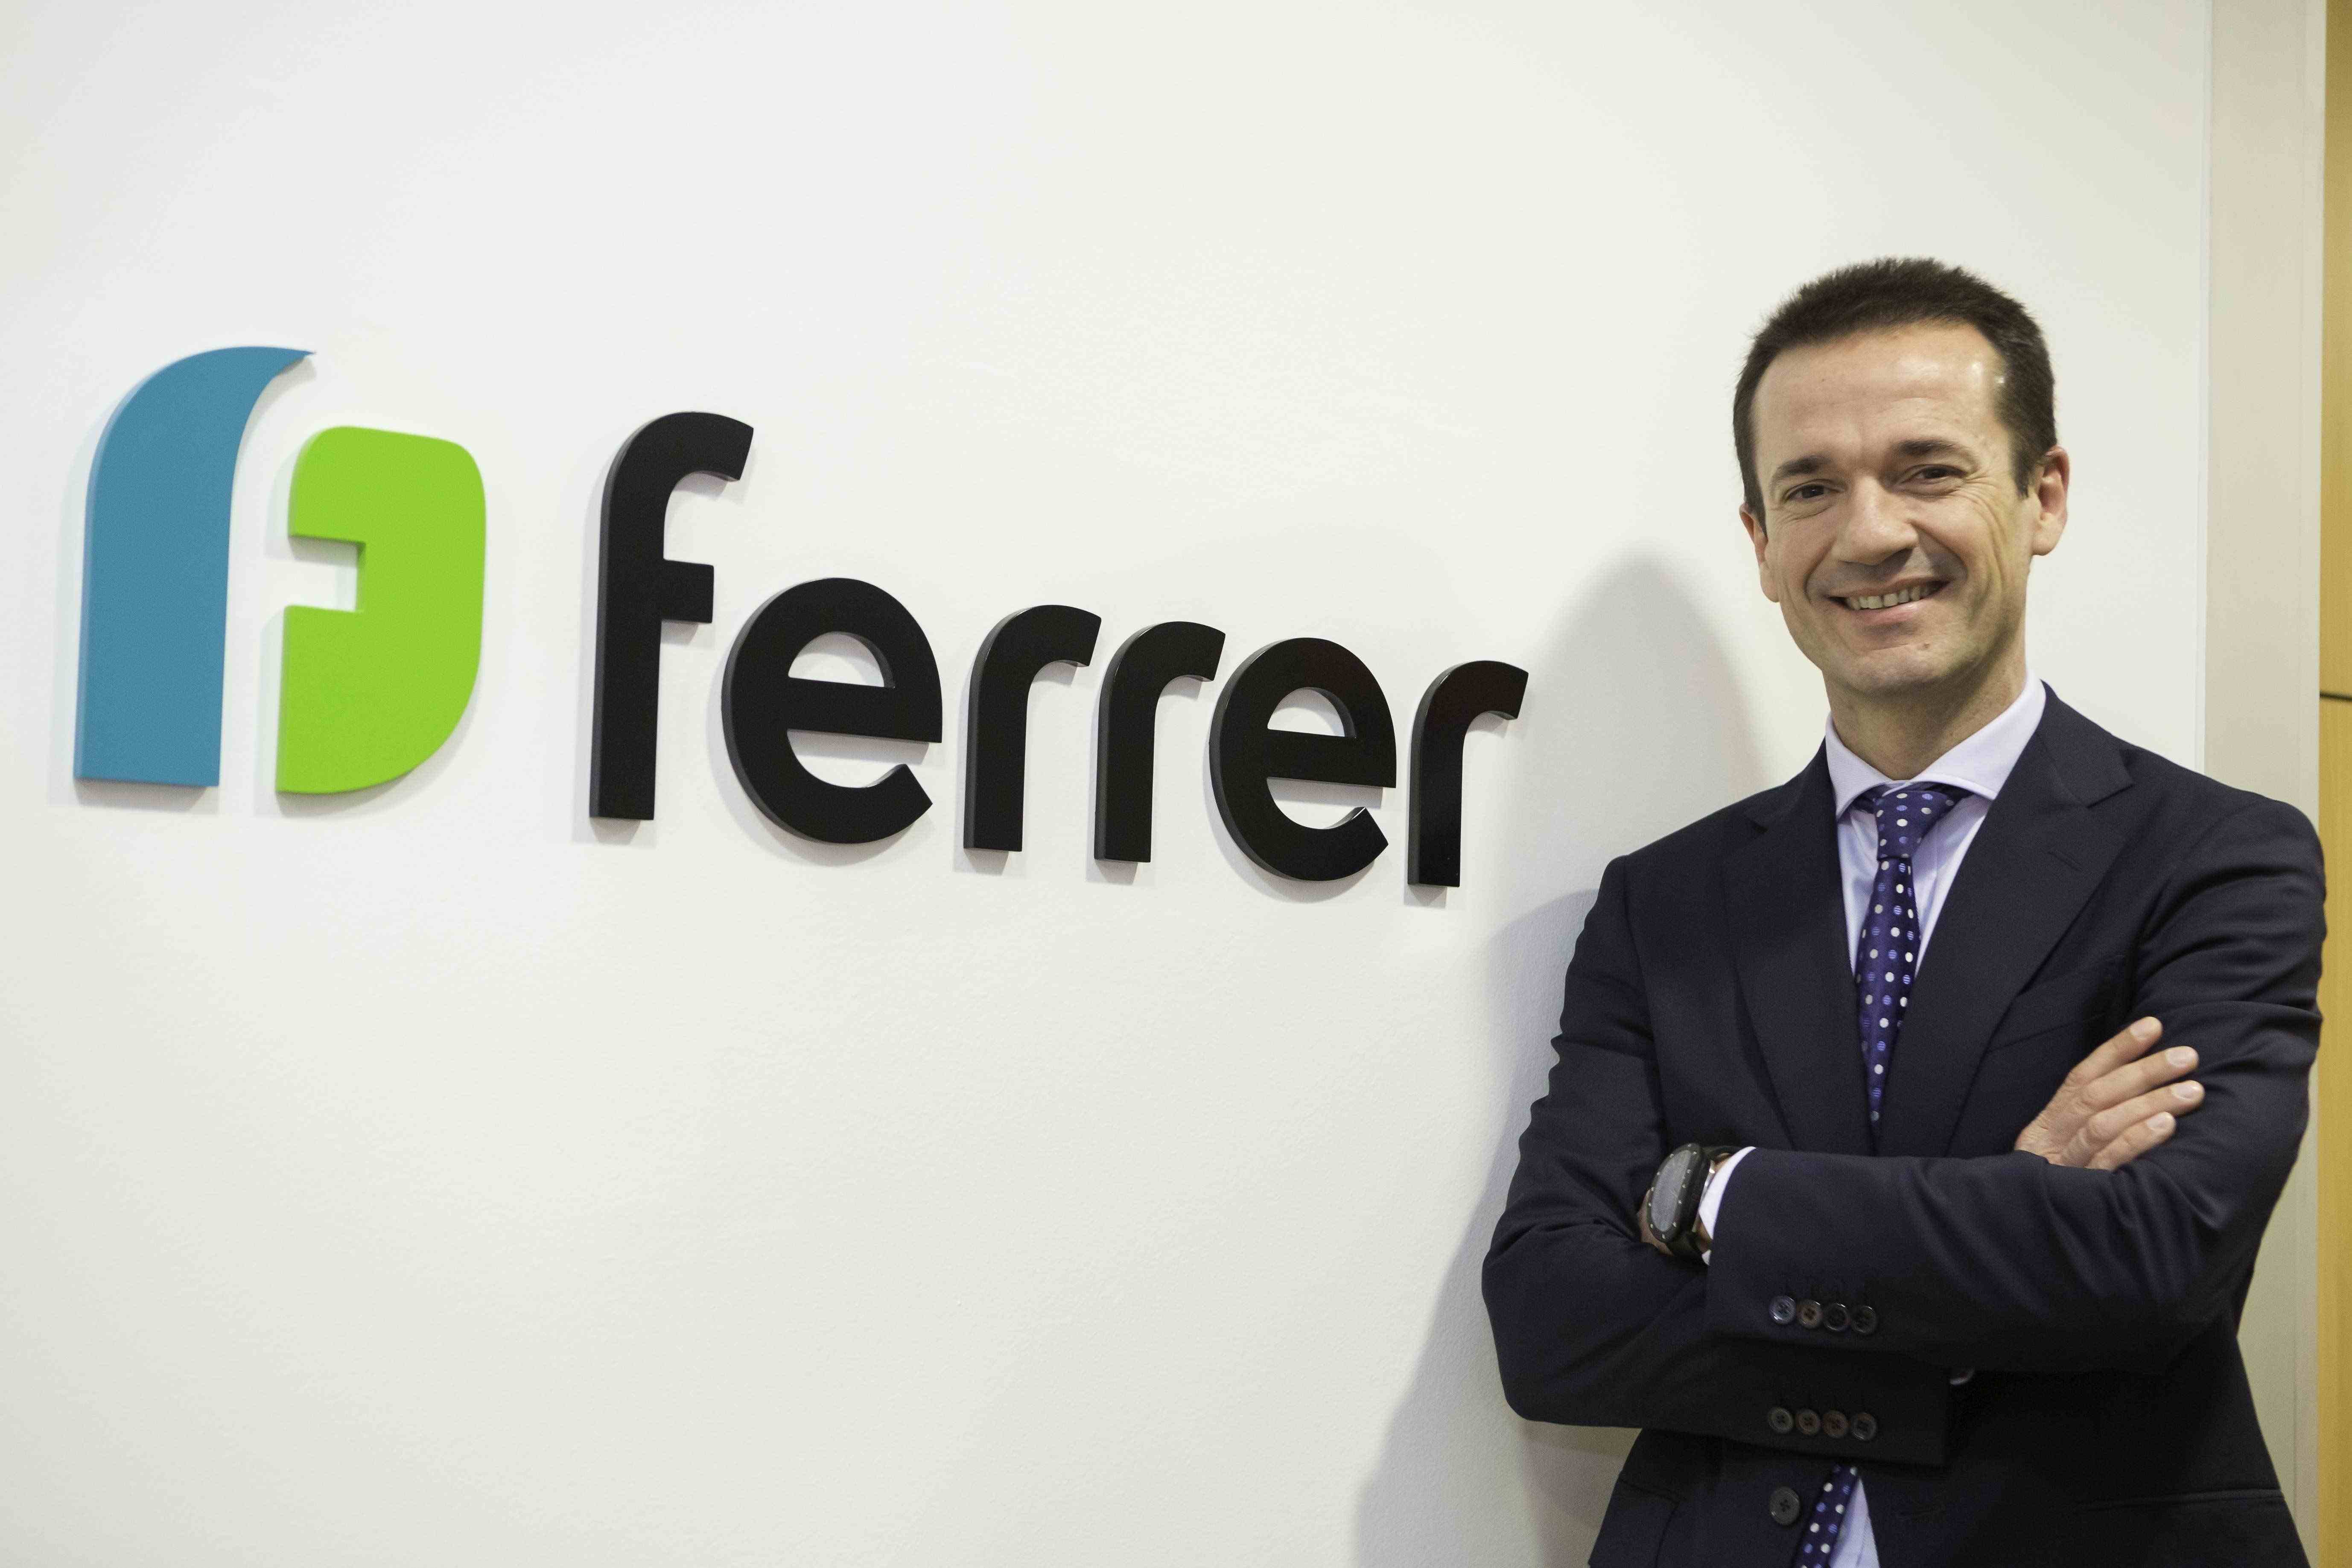 La farmacèutica Ferrer guanya un 82% i ultima el llançament de nous medicaments